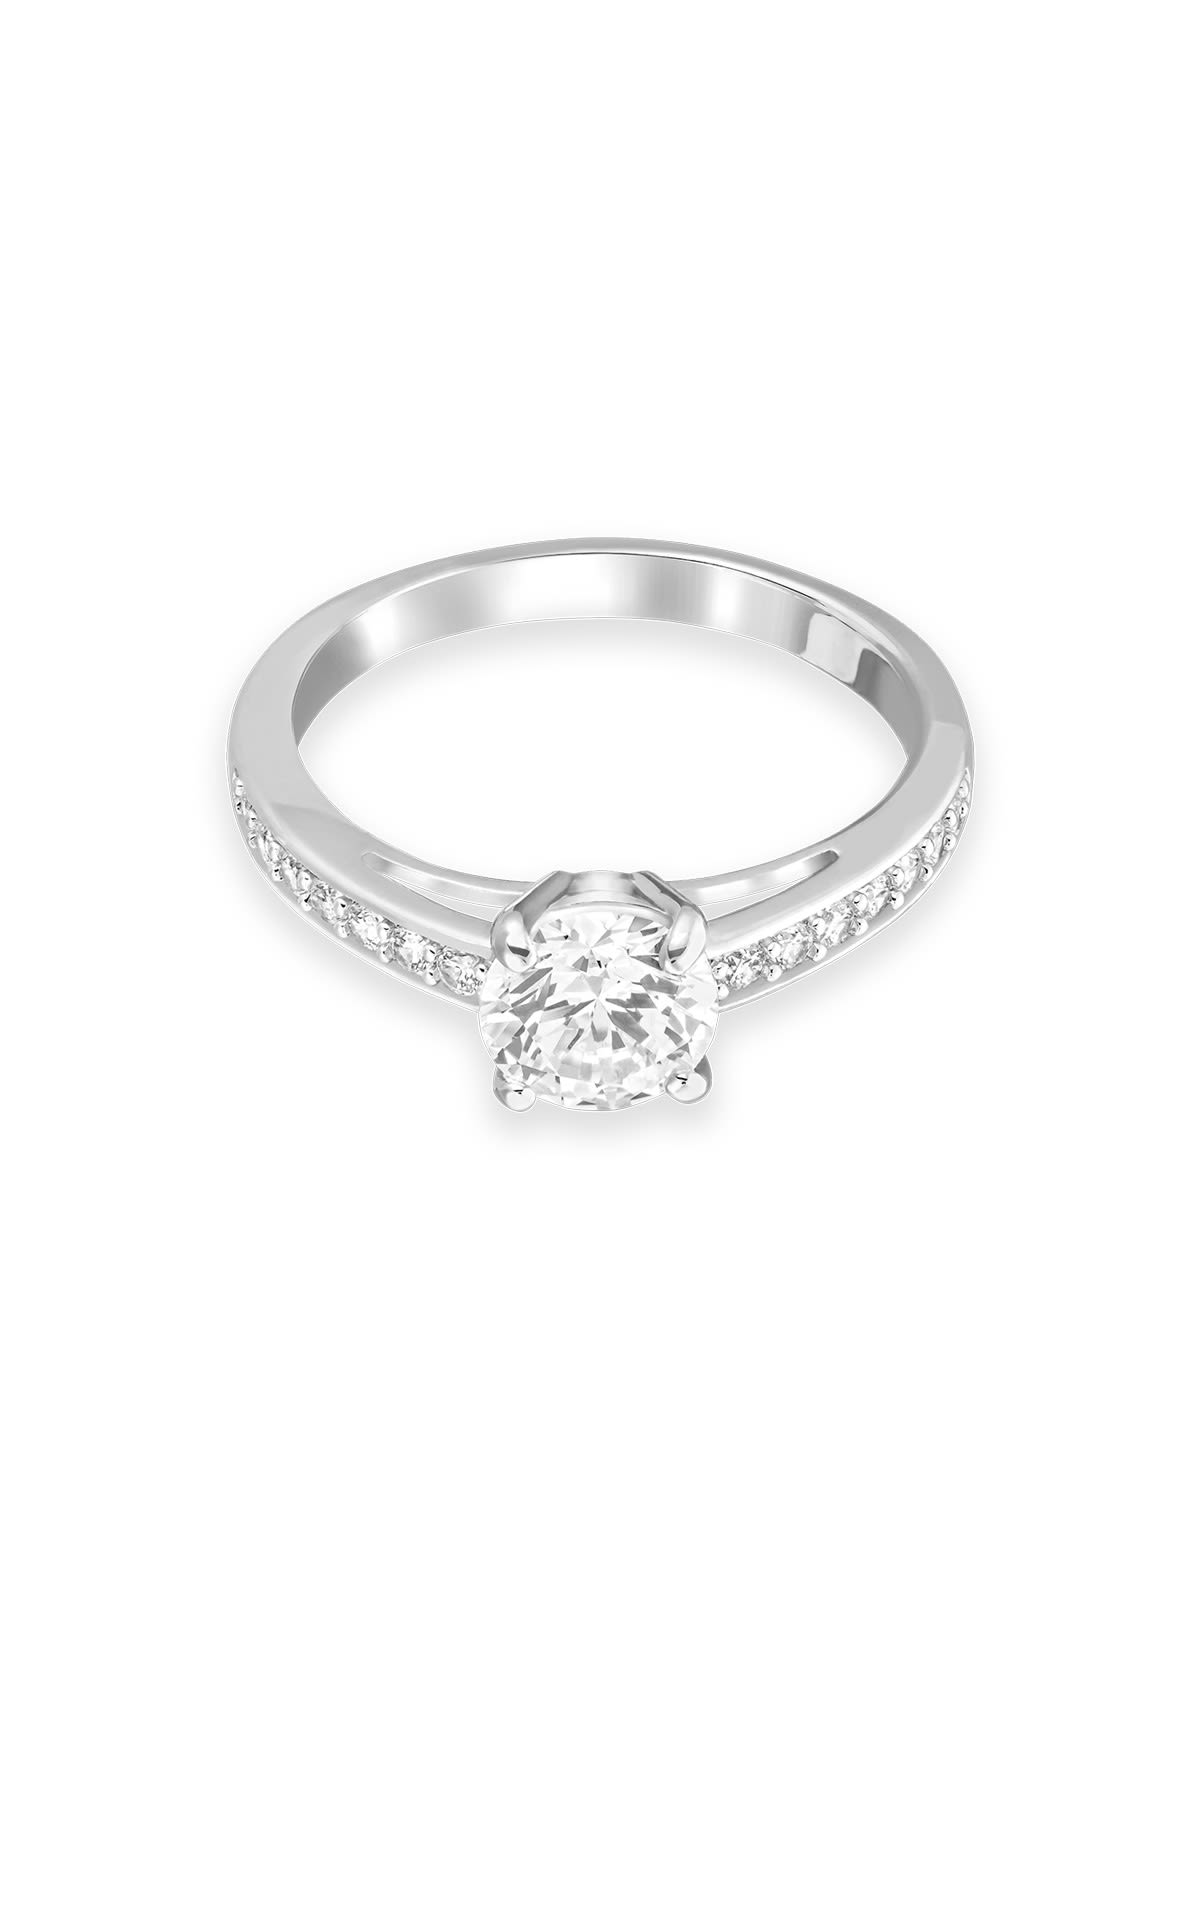 Silver ring with diamond Swarovski